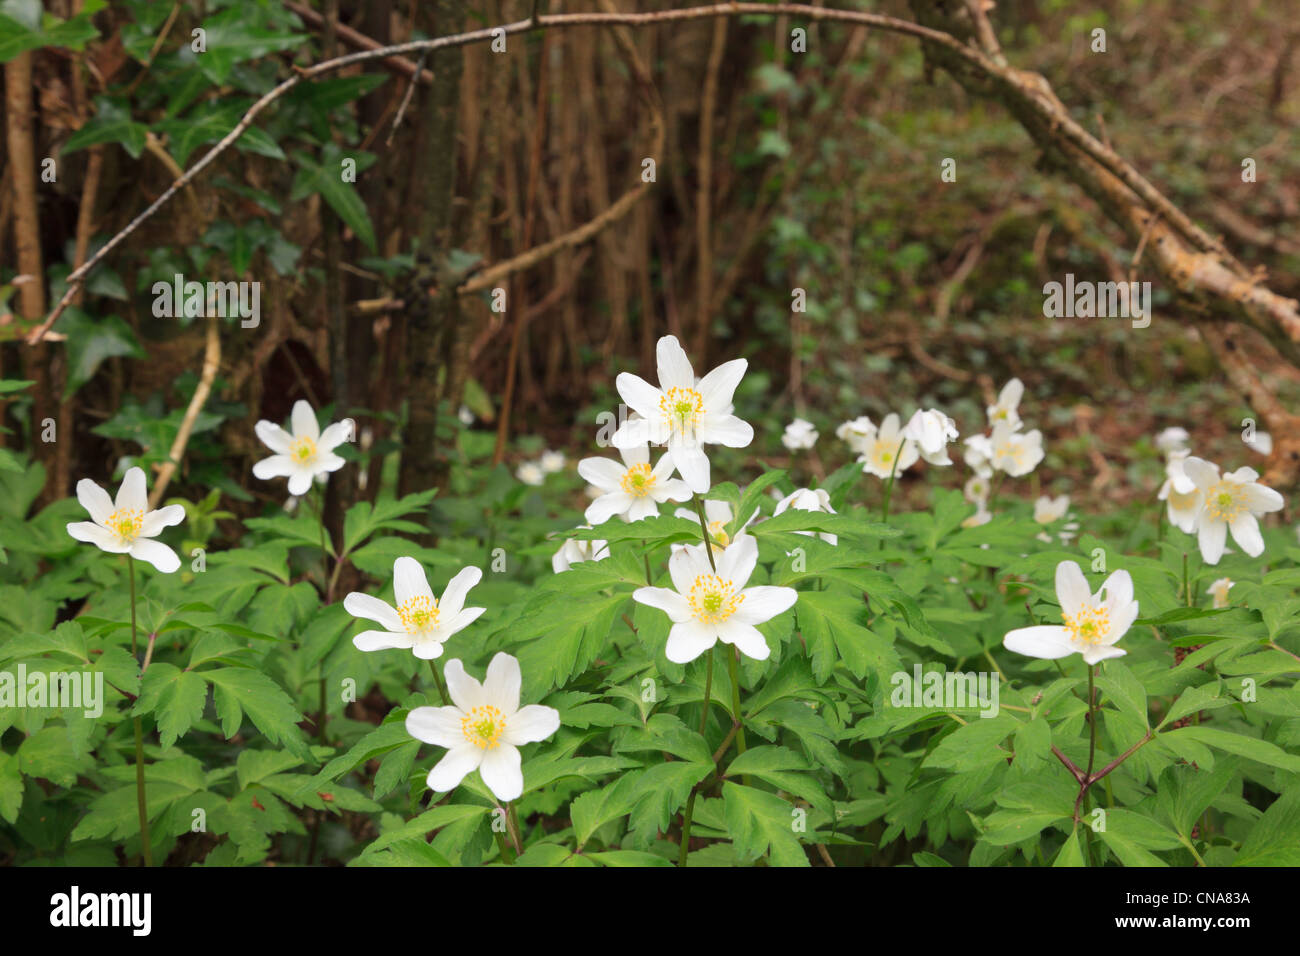 Primo piano di anemoni di legno Anemone nemorosa fiori selvatici fioriti in primavera in un bosco a pezzetti. Anglesey Galles del Nord, Regno Unito. Foto Stock